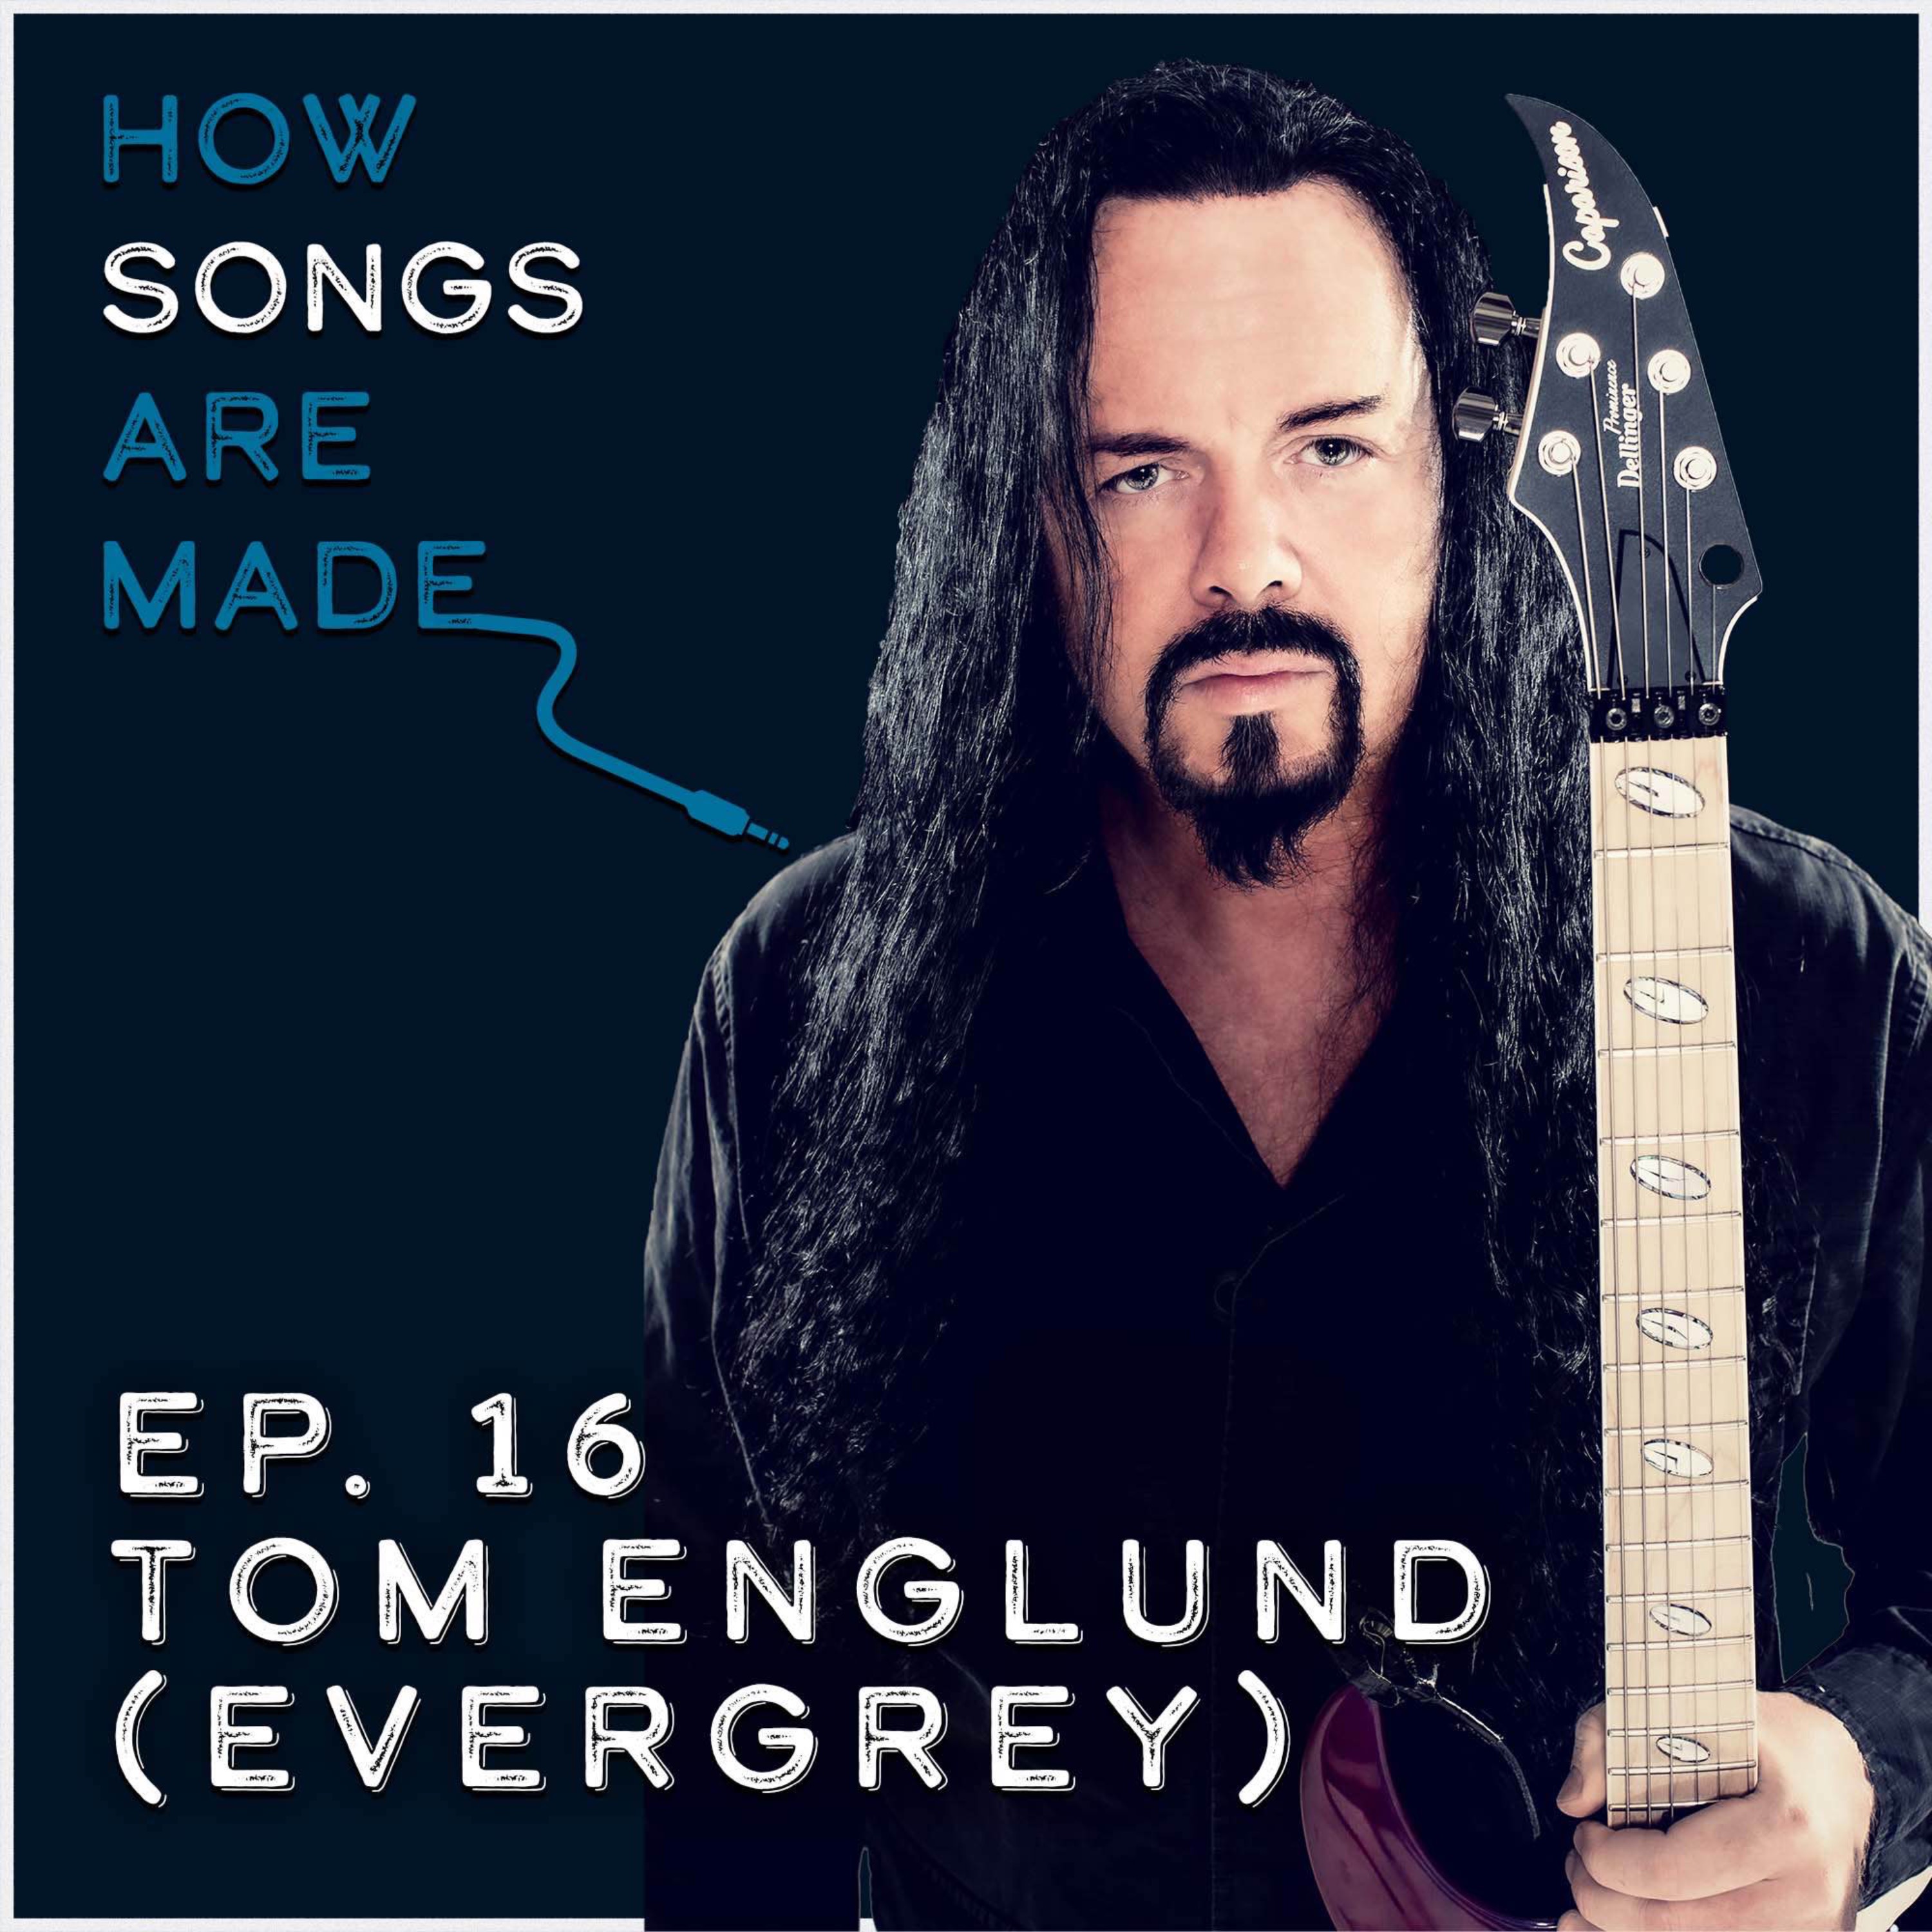 Tom Englund (Evergrey) Image